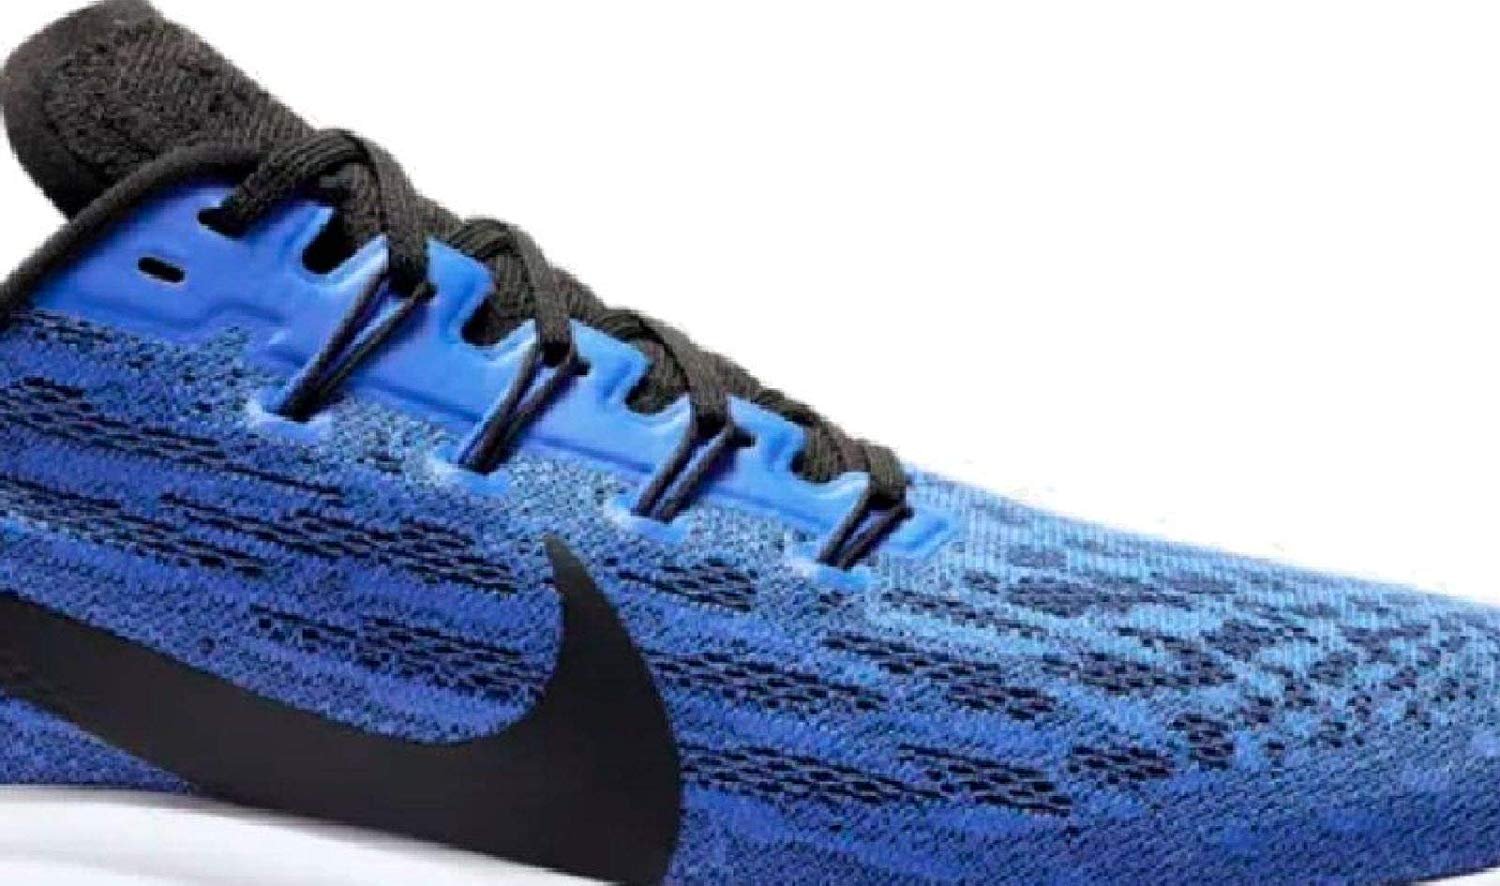 Nike Air Zoom Pegasus 36 Men's Running Shoe Racer Blue/Black-White Size 11.0 - image 5 of 6